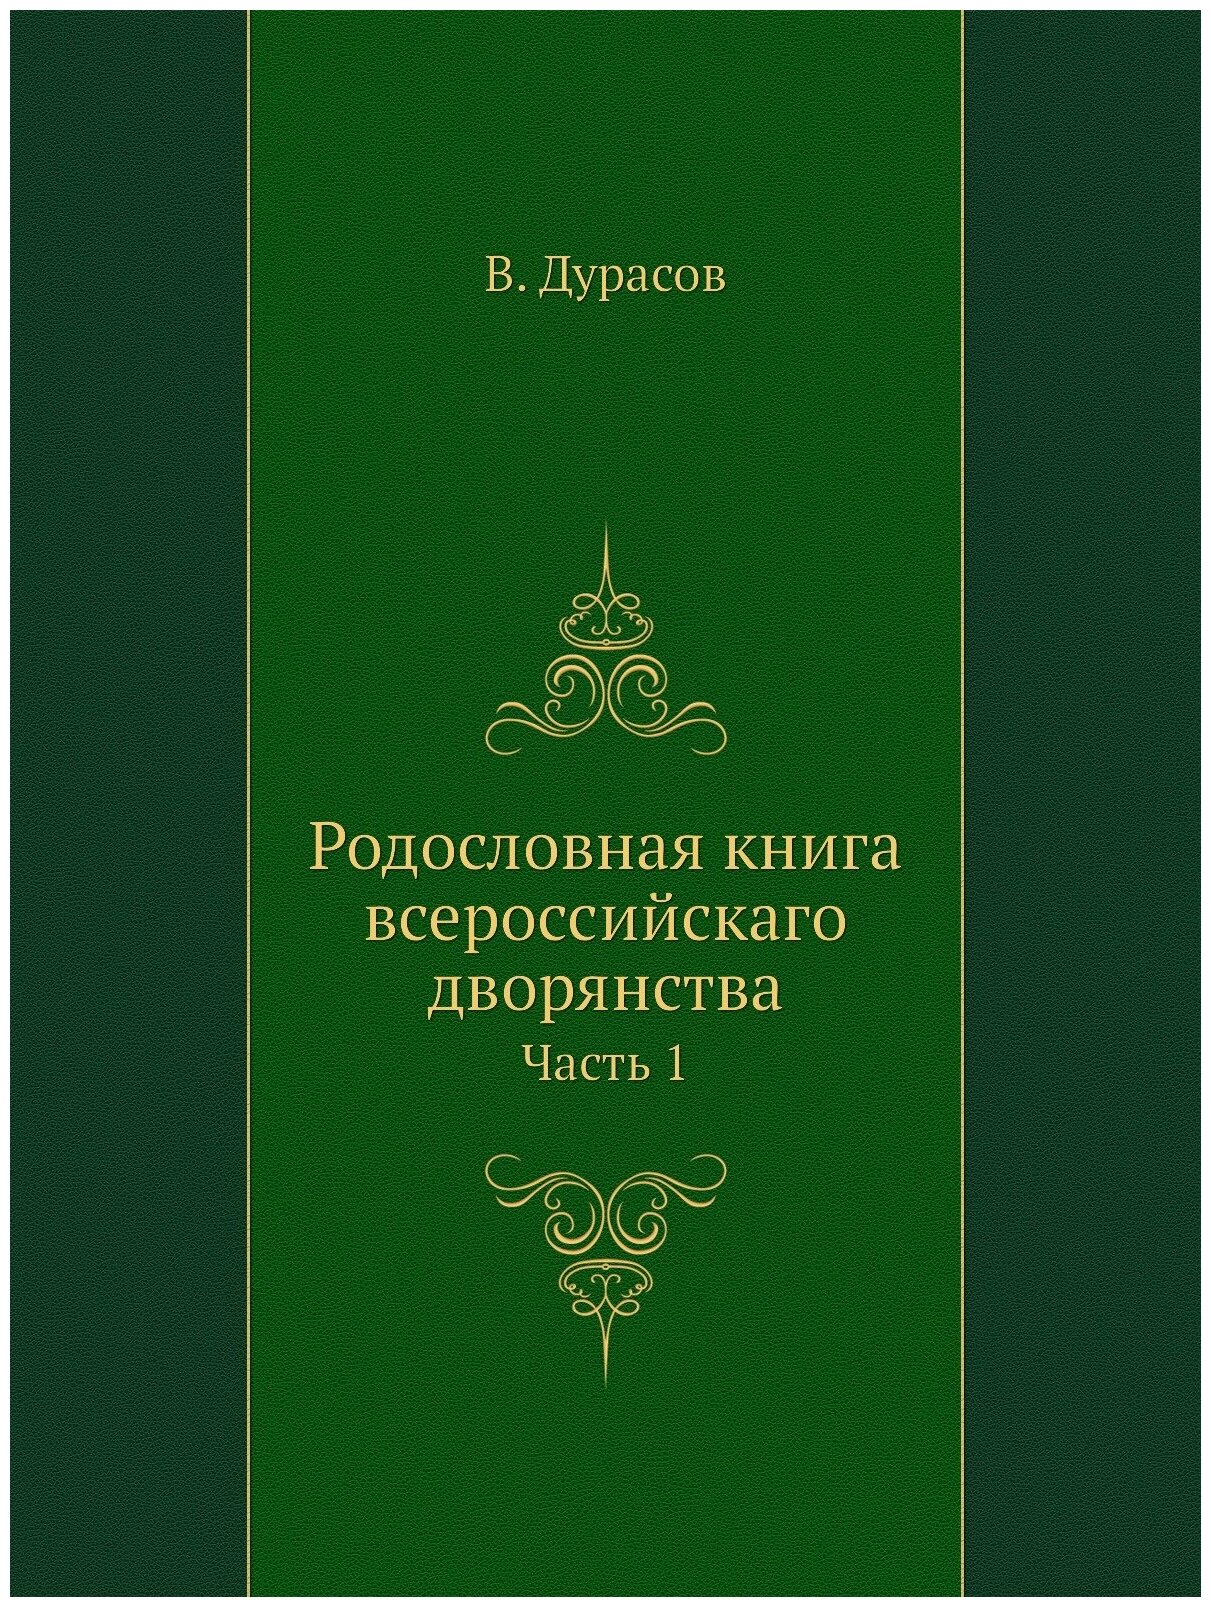 Родословная книга всероссийскаго дворянства. Часть 1